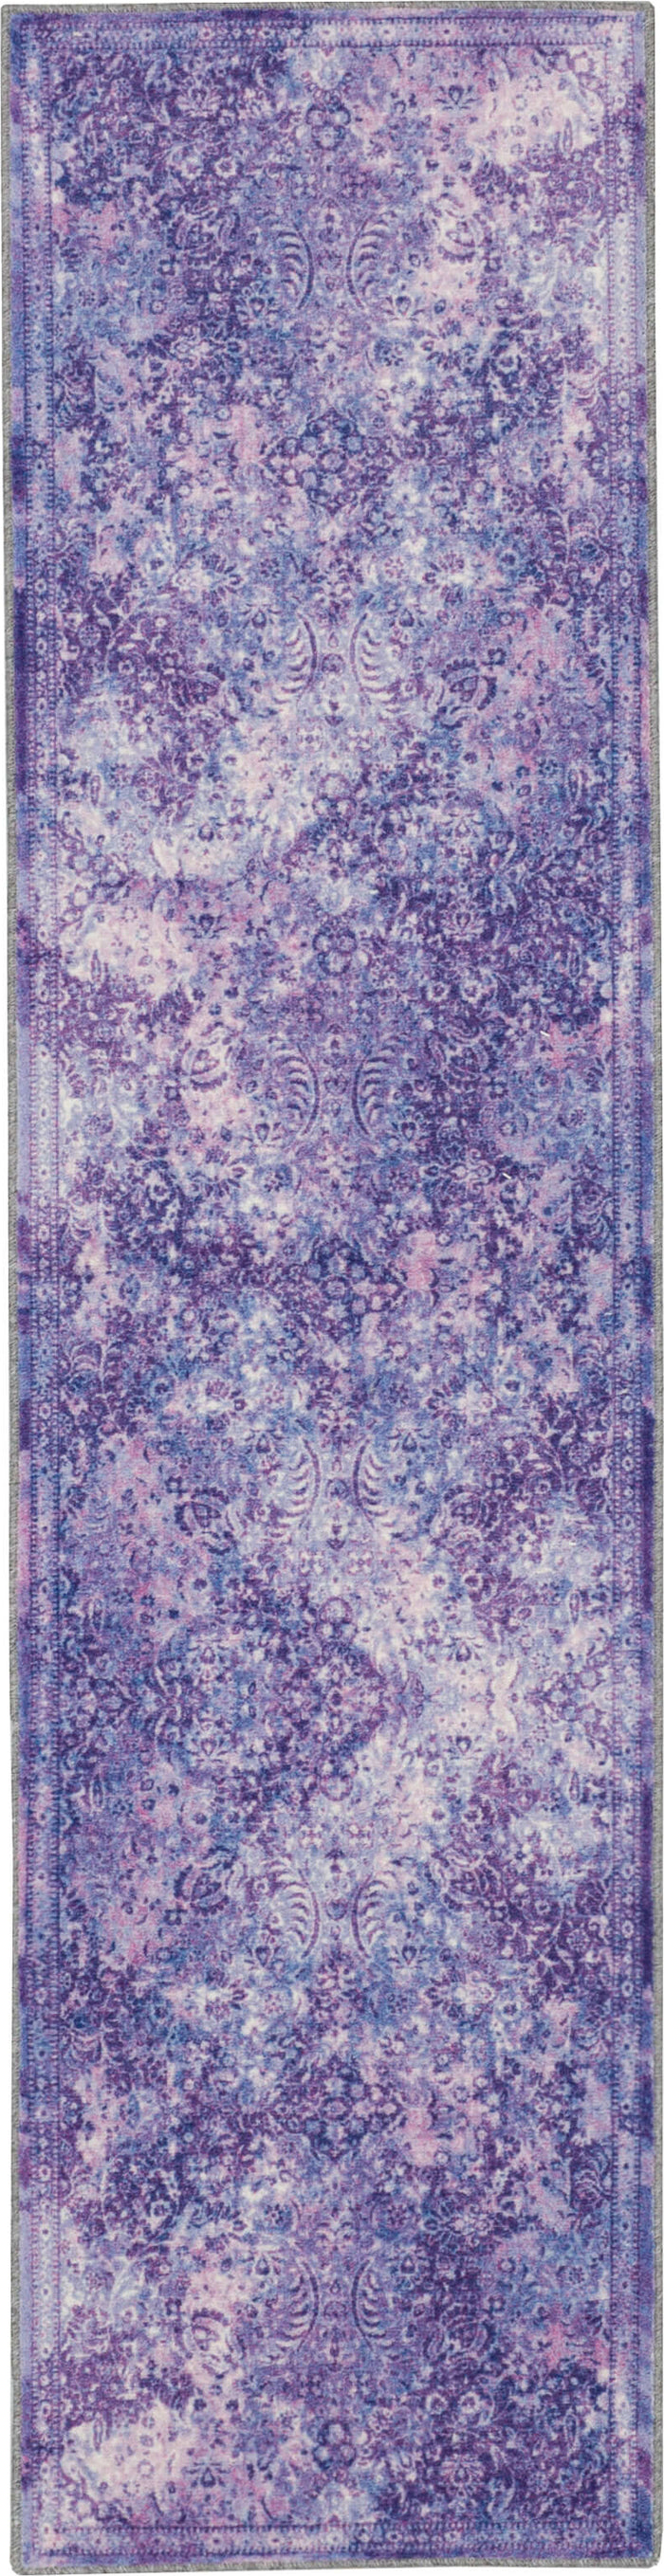 Technicolor Persian Purple Area Rug